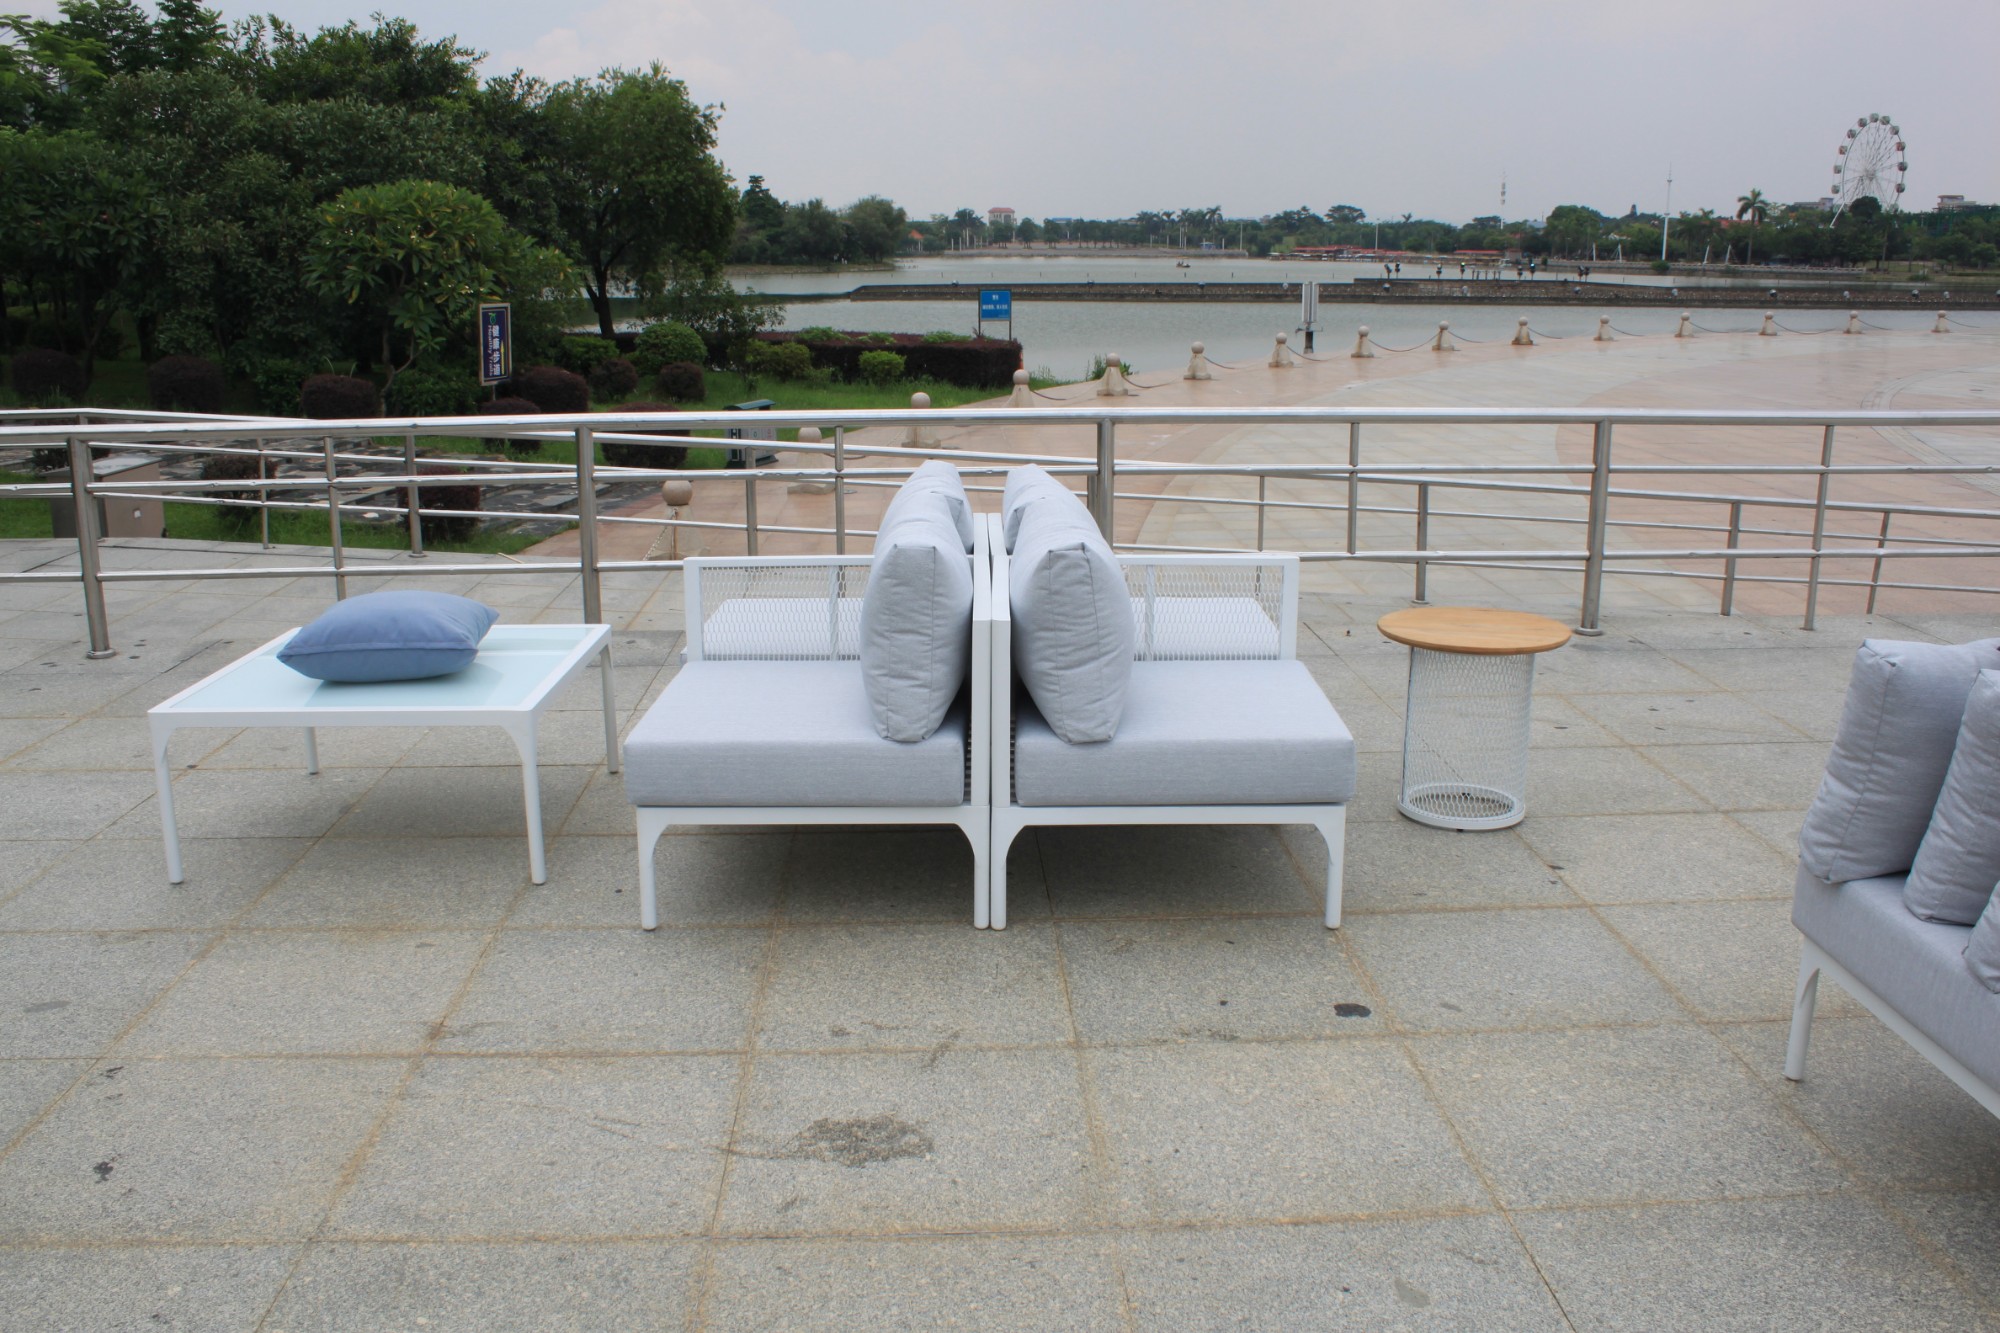 muebles de exterior del sofá del jardín de aluminio